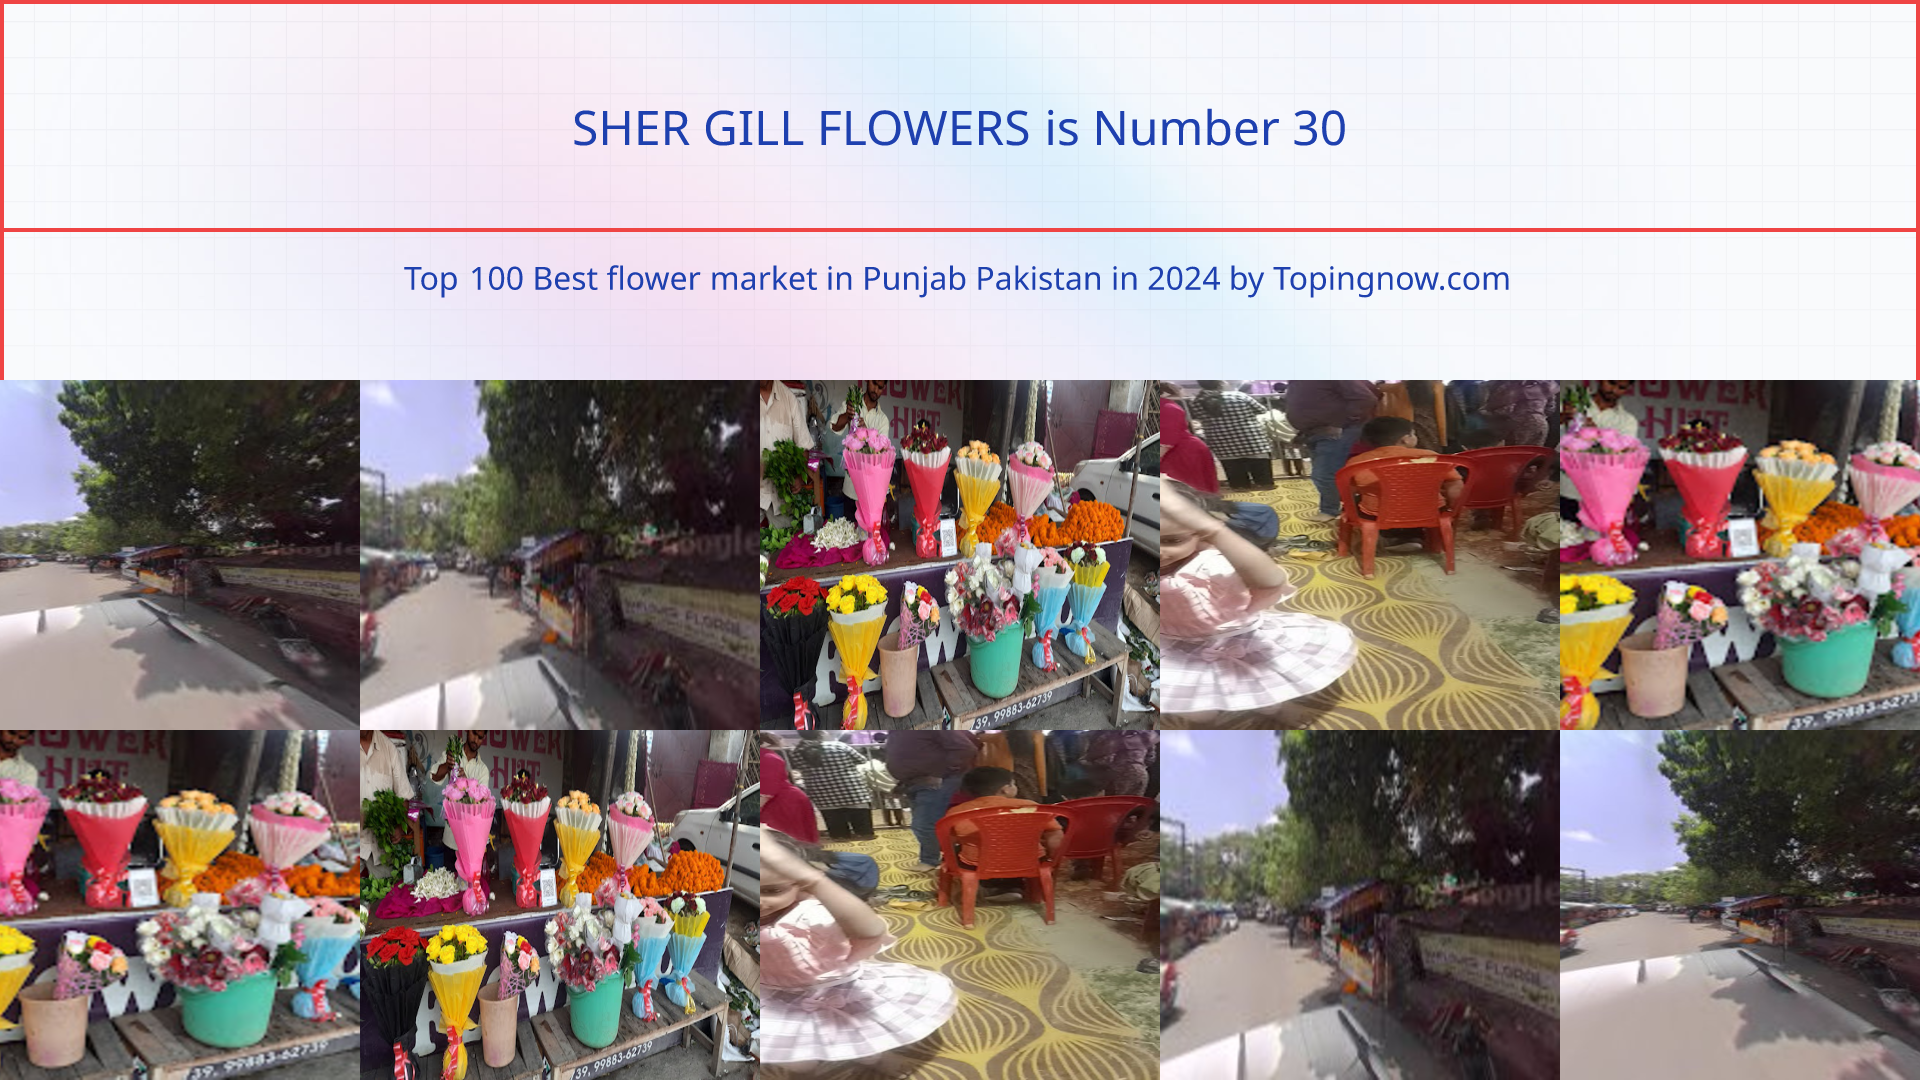 SHER GILL FLOWERS: Top 100 Best flower market in Punjab Pakistan in 2024